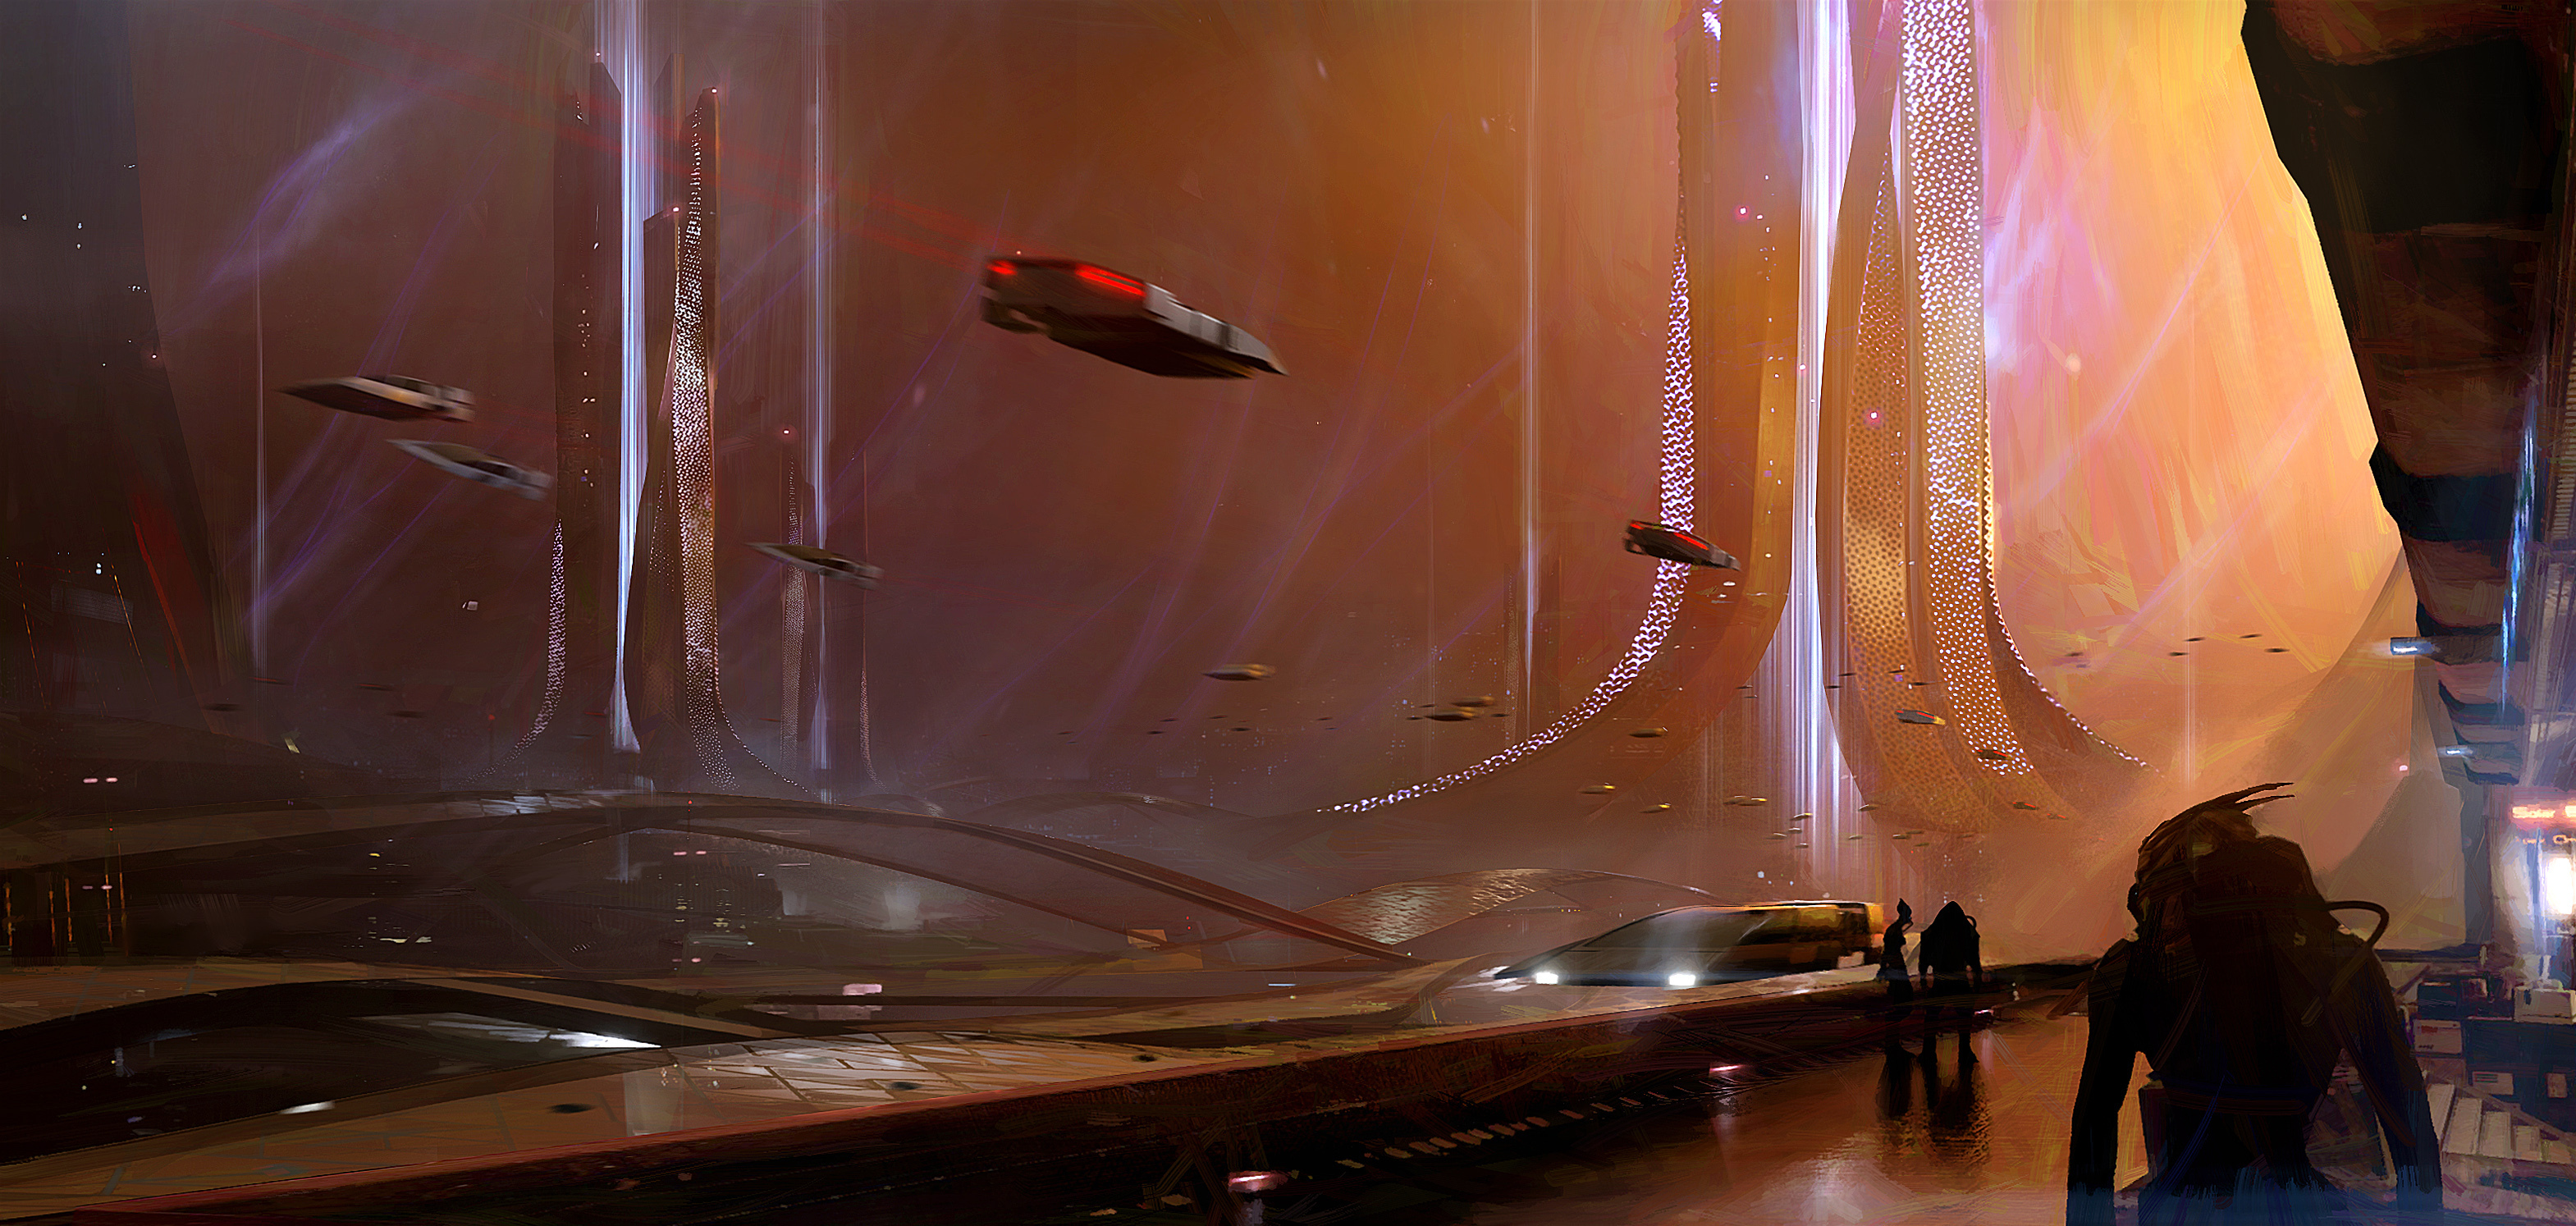 Immagine pubblicata in relazione al seguente contenuto: Bioware condivide il primo teaser trailer del prossimo capitolo di Mass Effect | Nome immagine: news33855_Next_Mass_Effect_Concept_Art_1.png